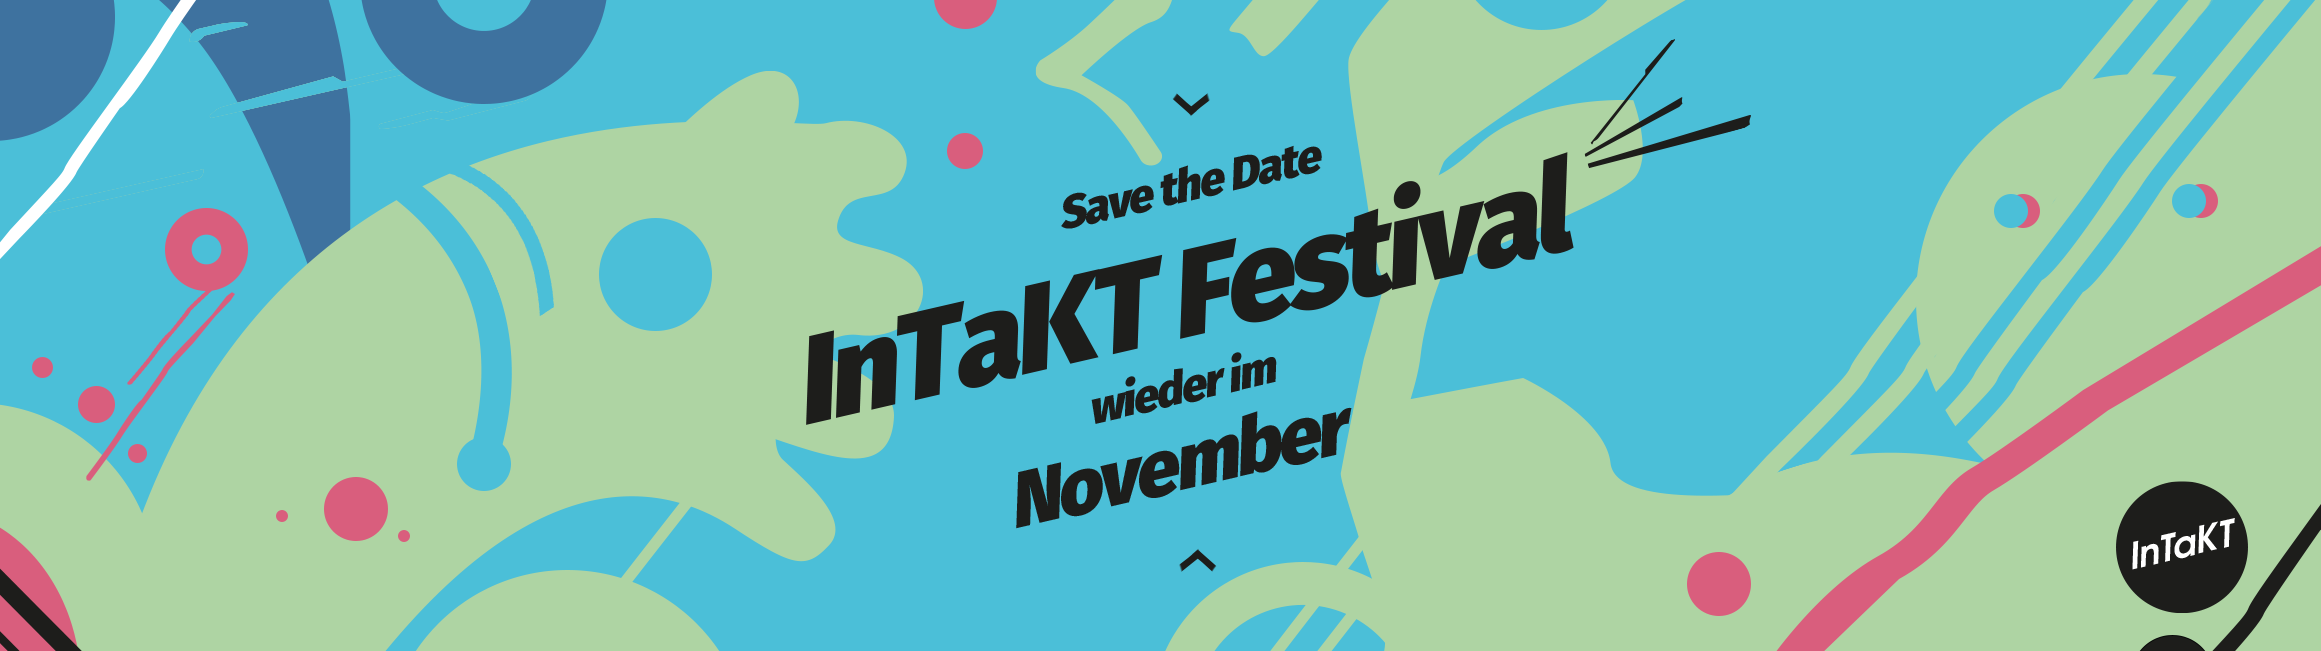 InTaKT Festival